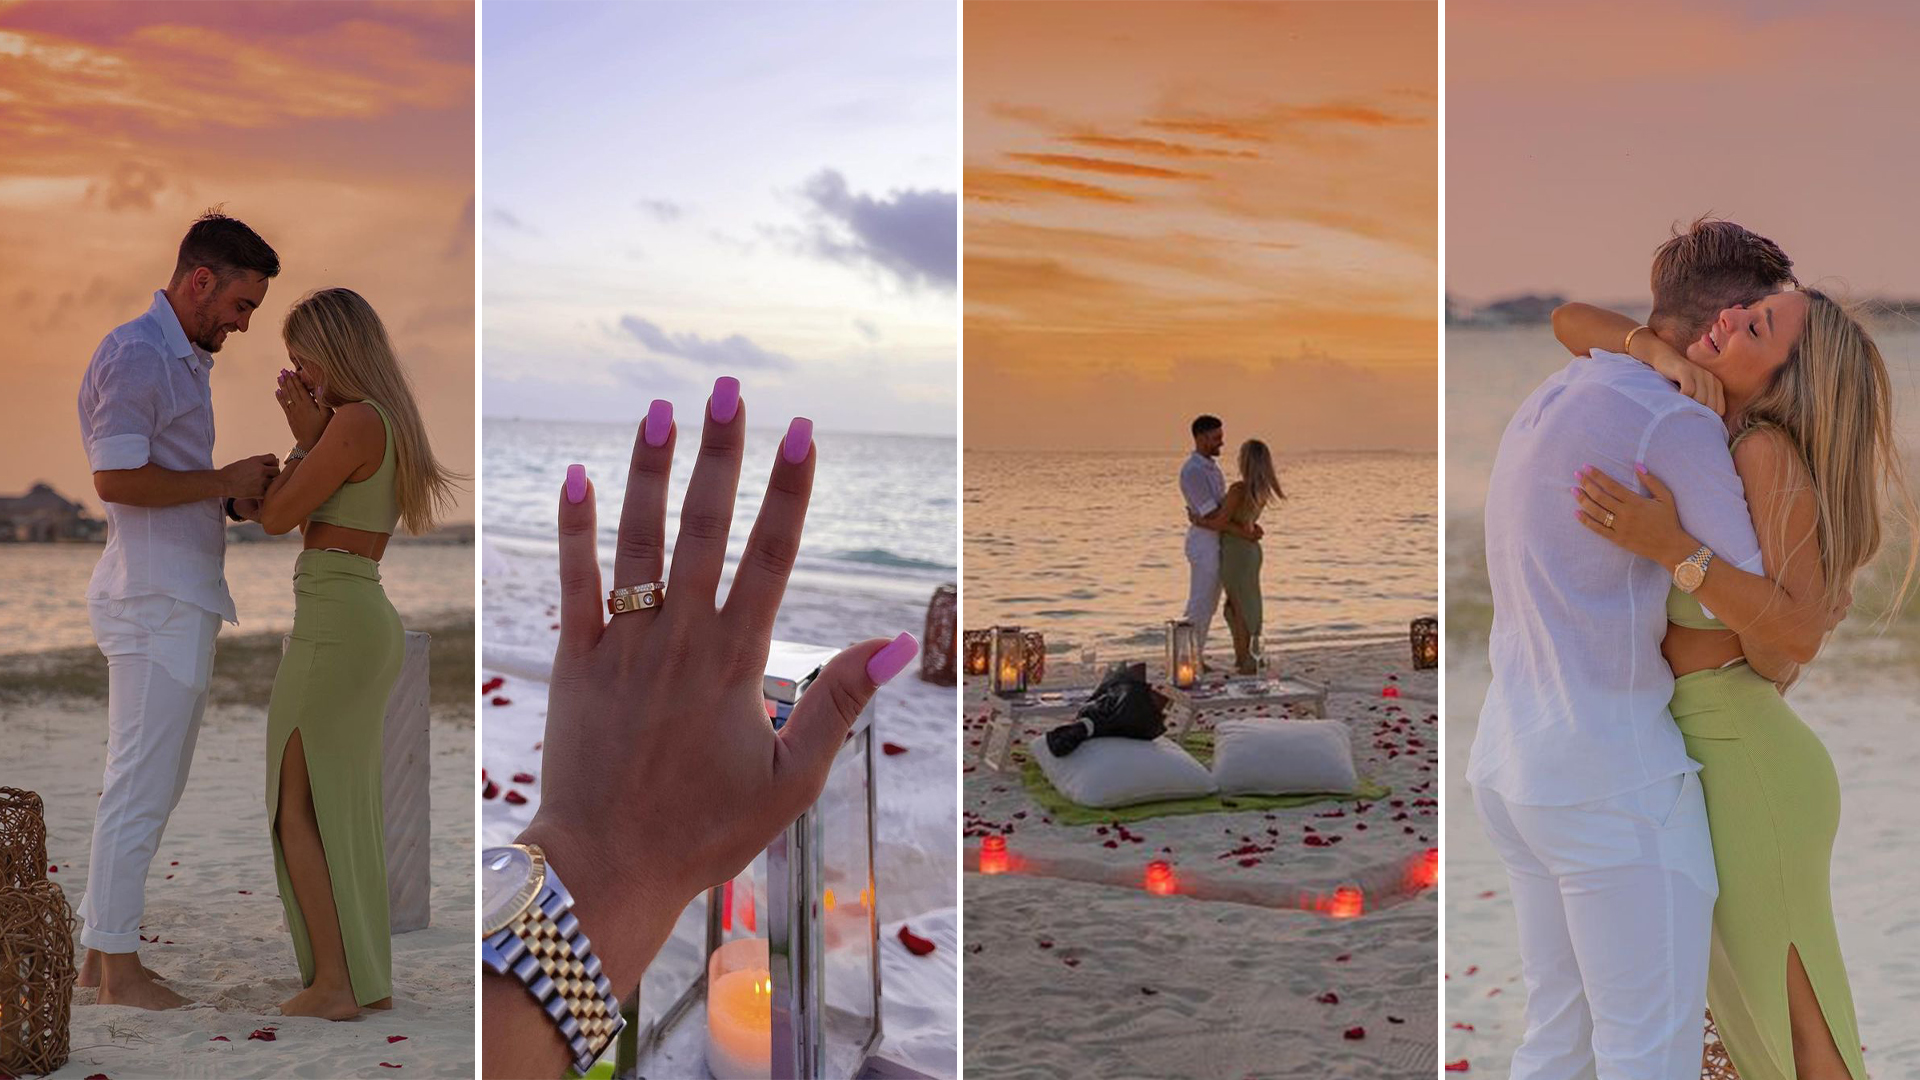 Tagliafico le propuso casamiento a Calvagni en 2020 durante un viaje a Maldivas